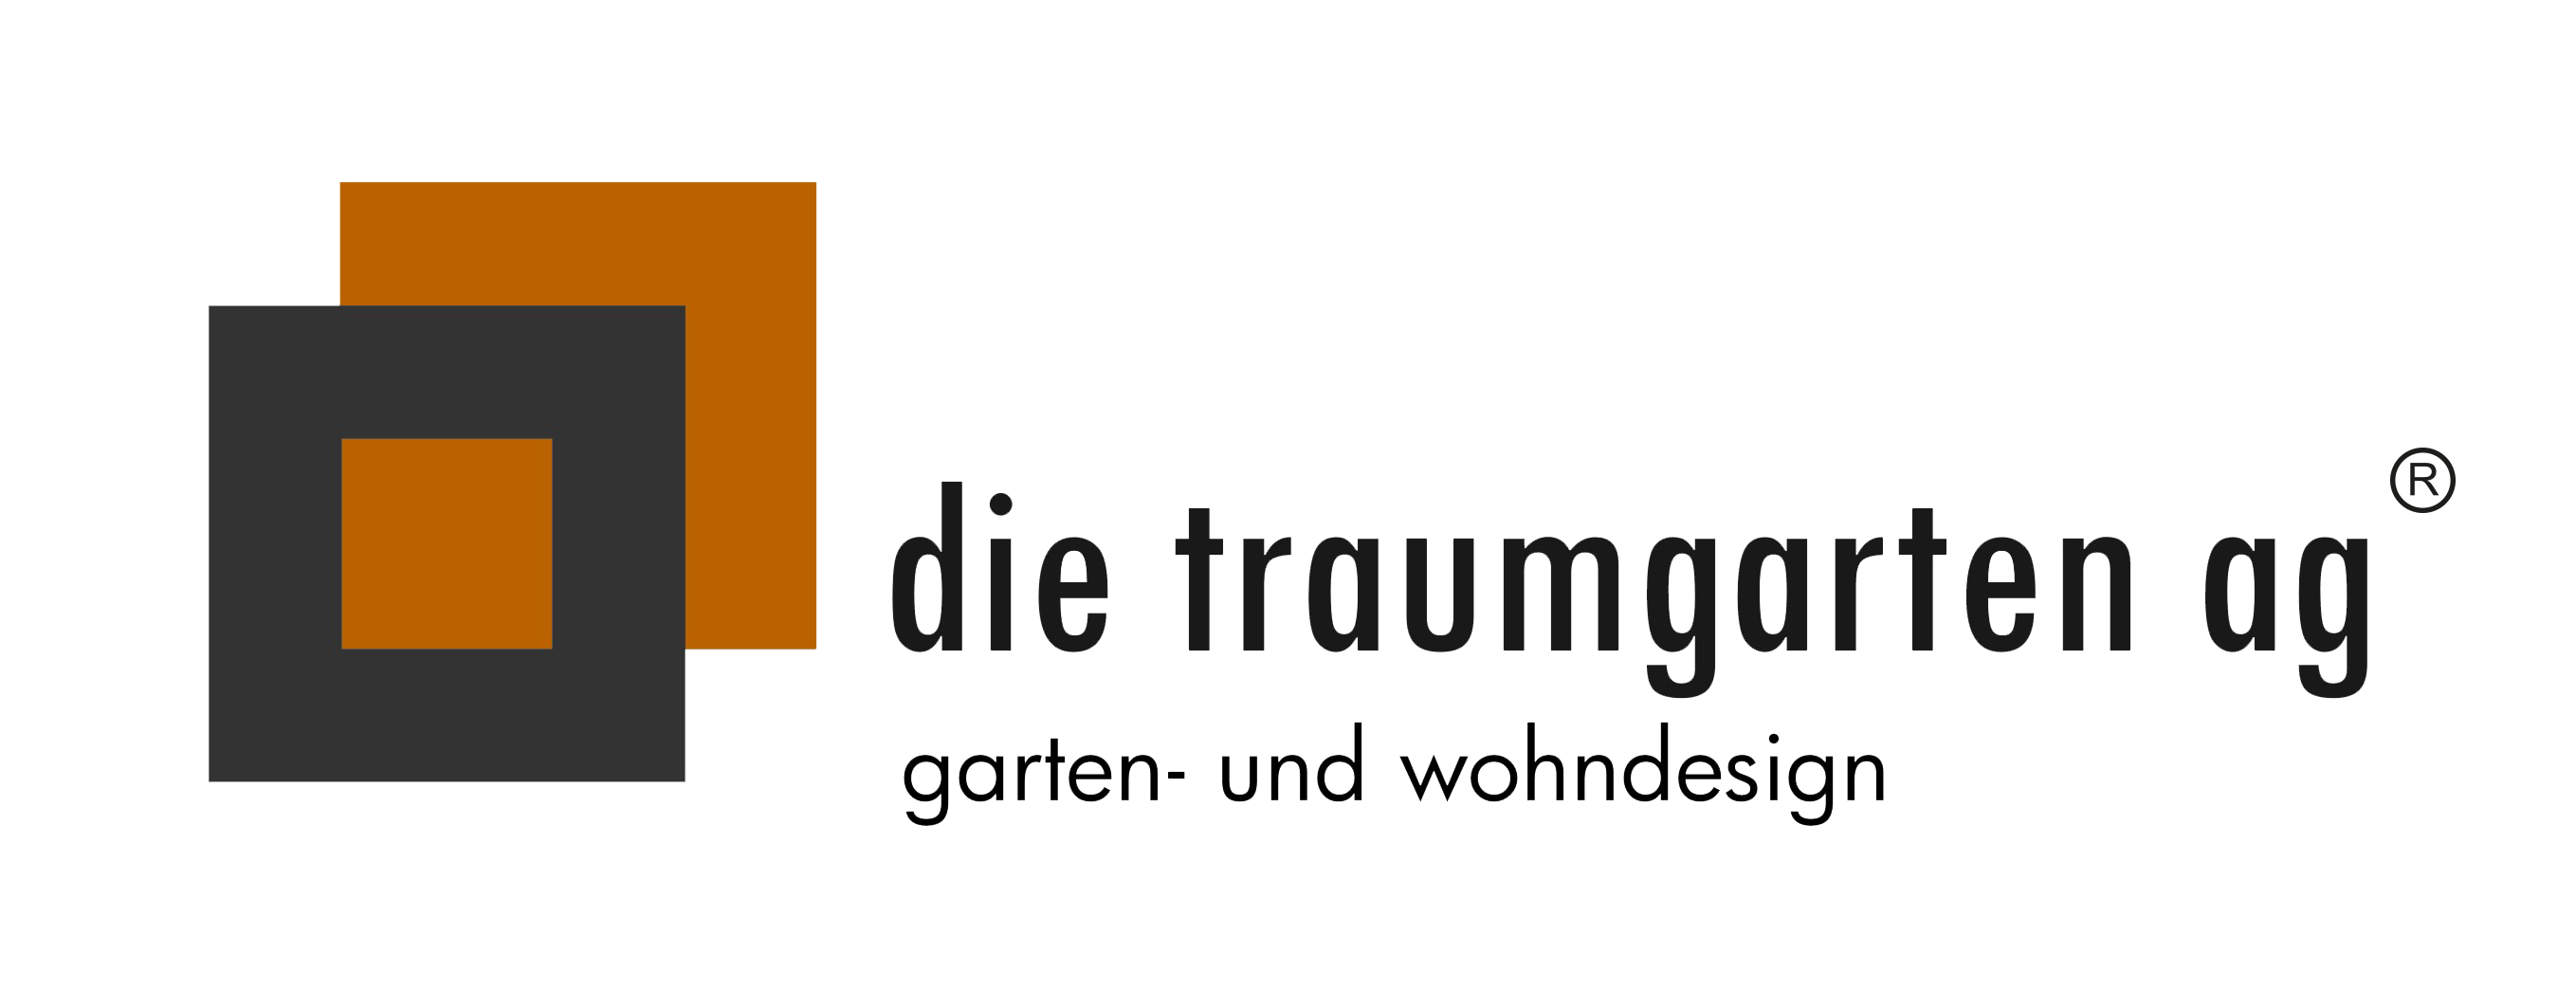 Logo die traumgarten ag